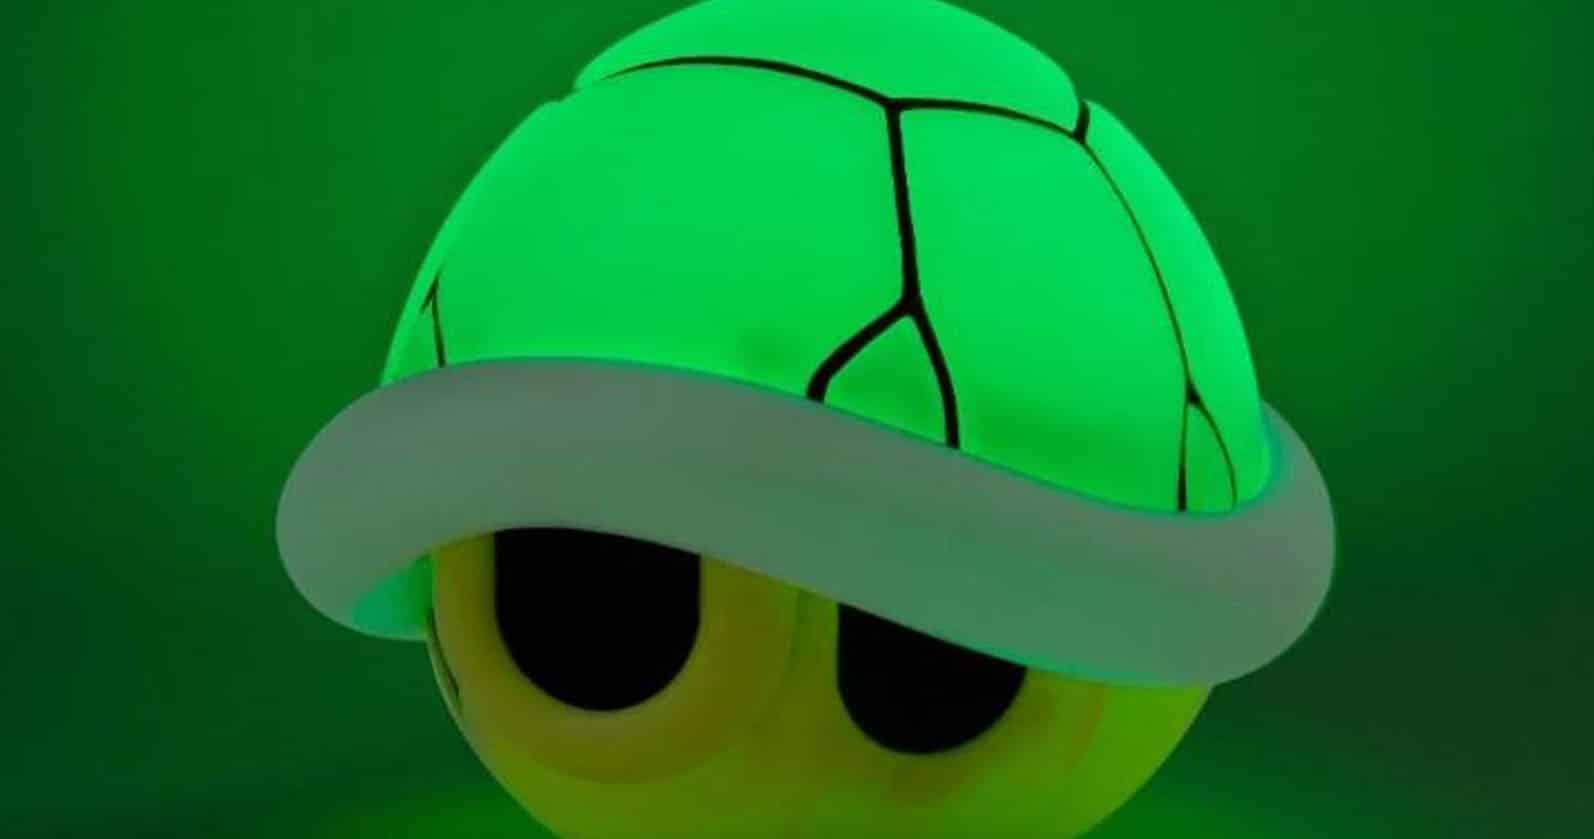 Super Mario Green Shell Light